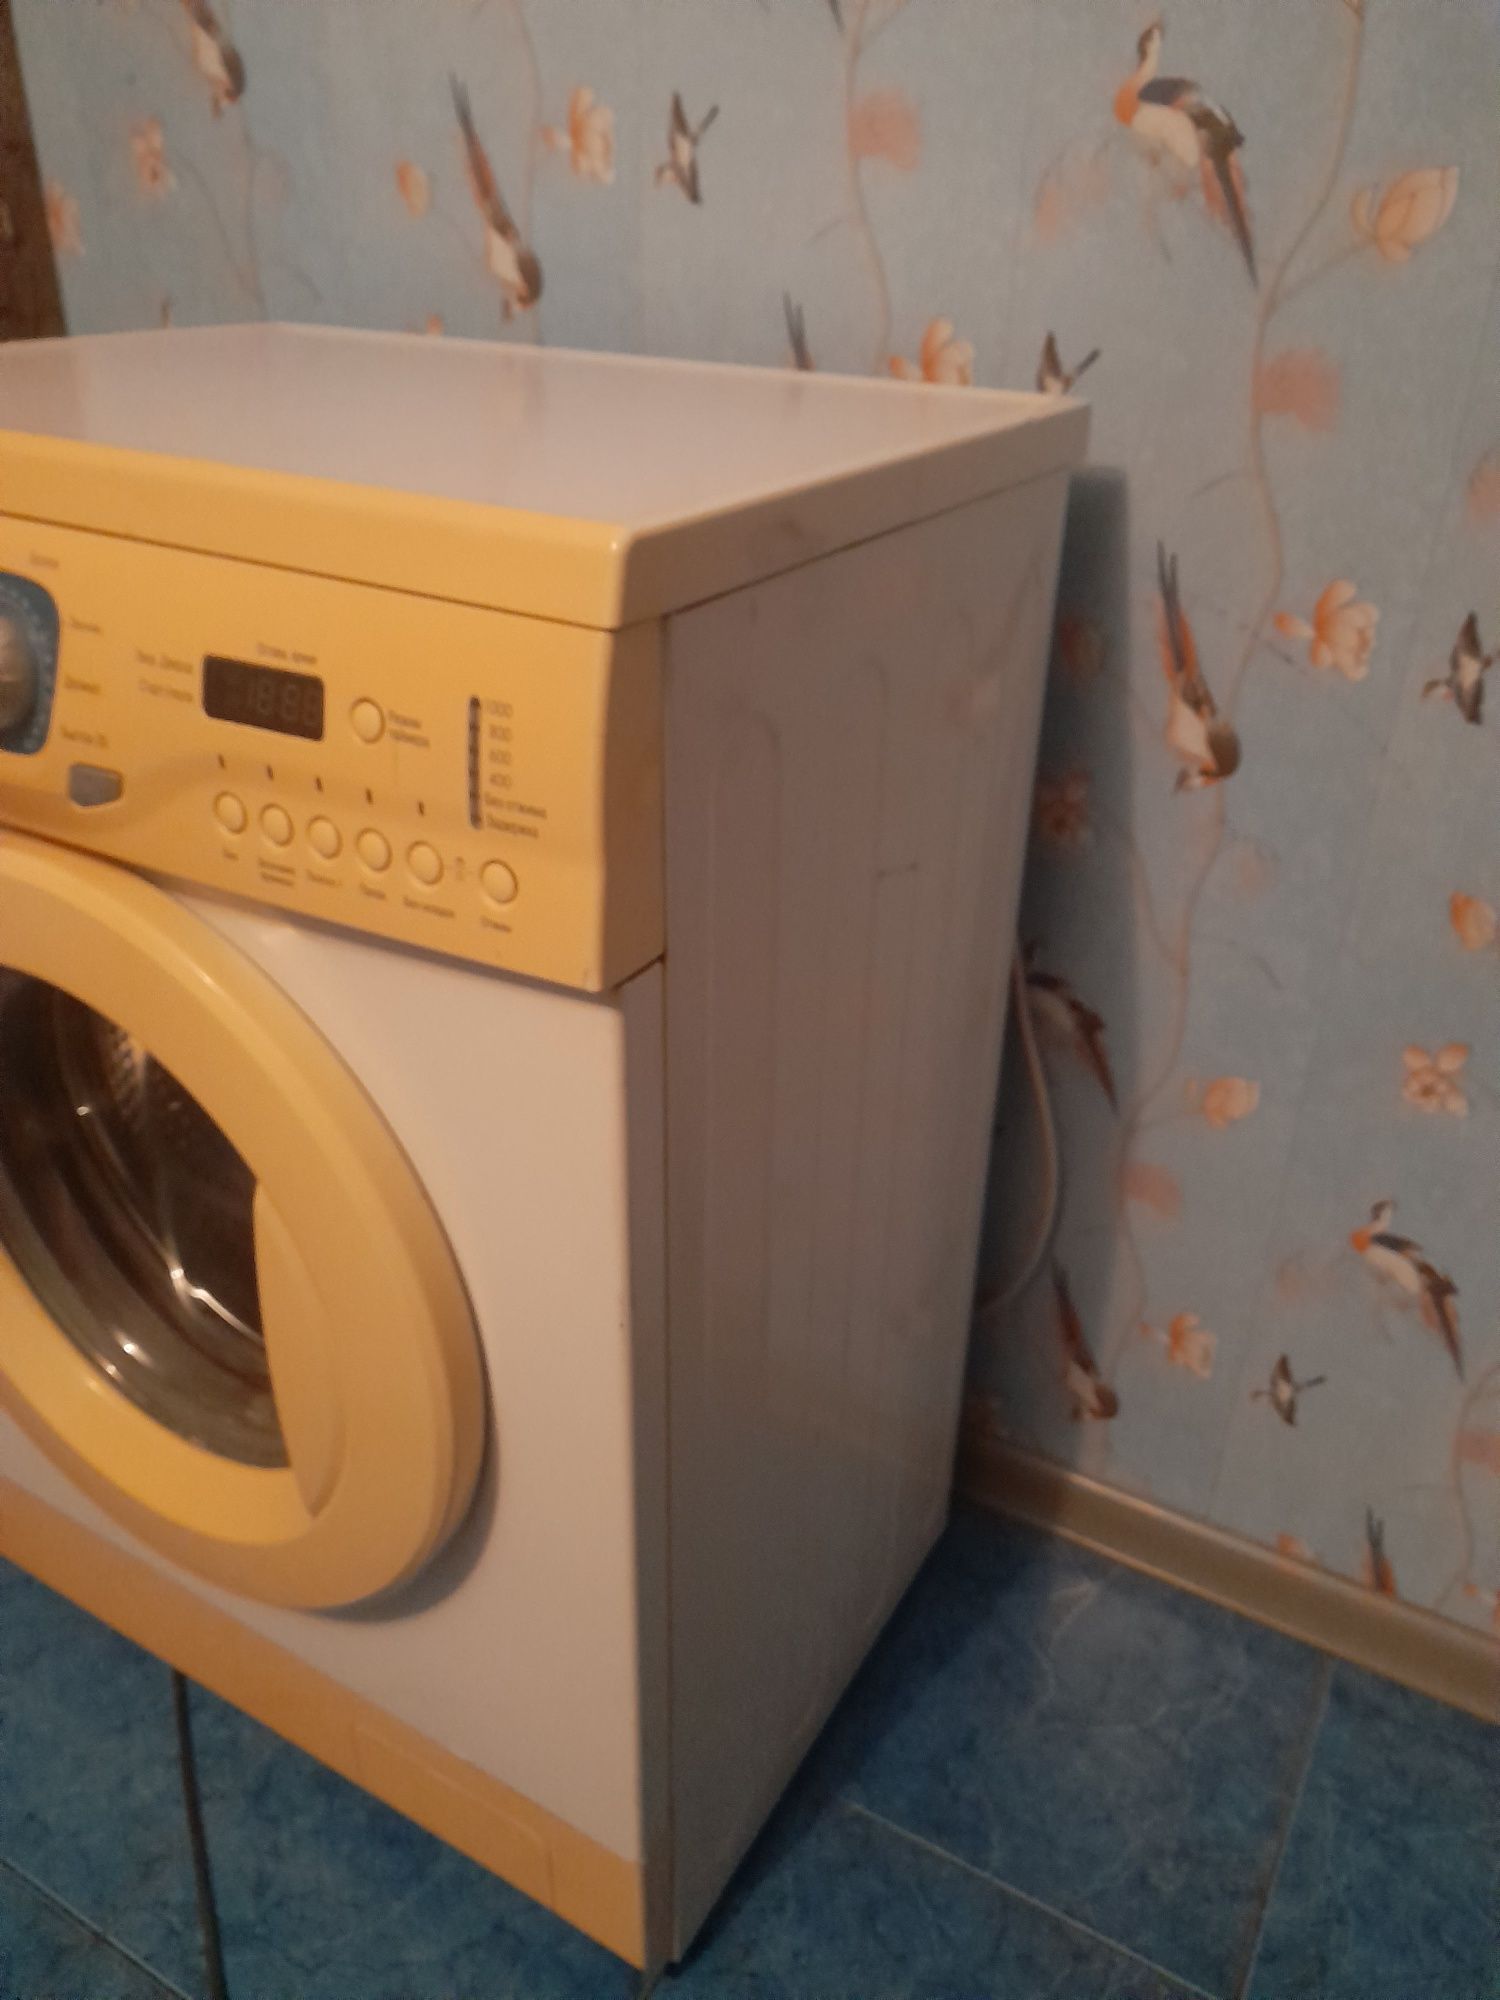 Продам стиральную машинку автомат б/у. в рабочем состоянии